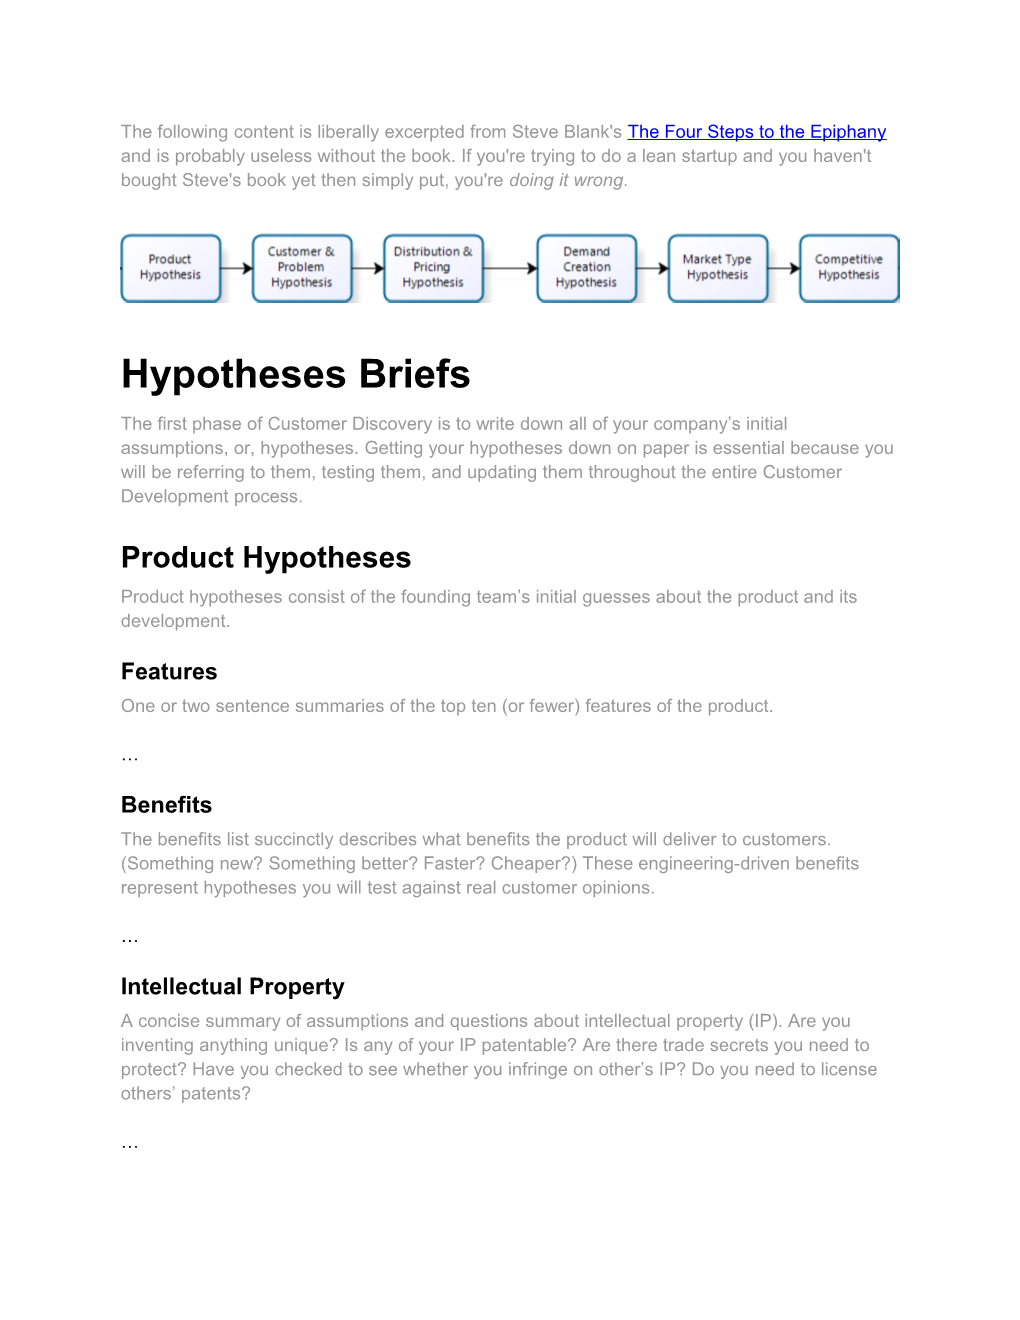 Hypotheses Briefs